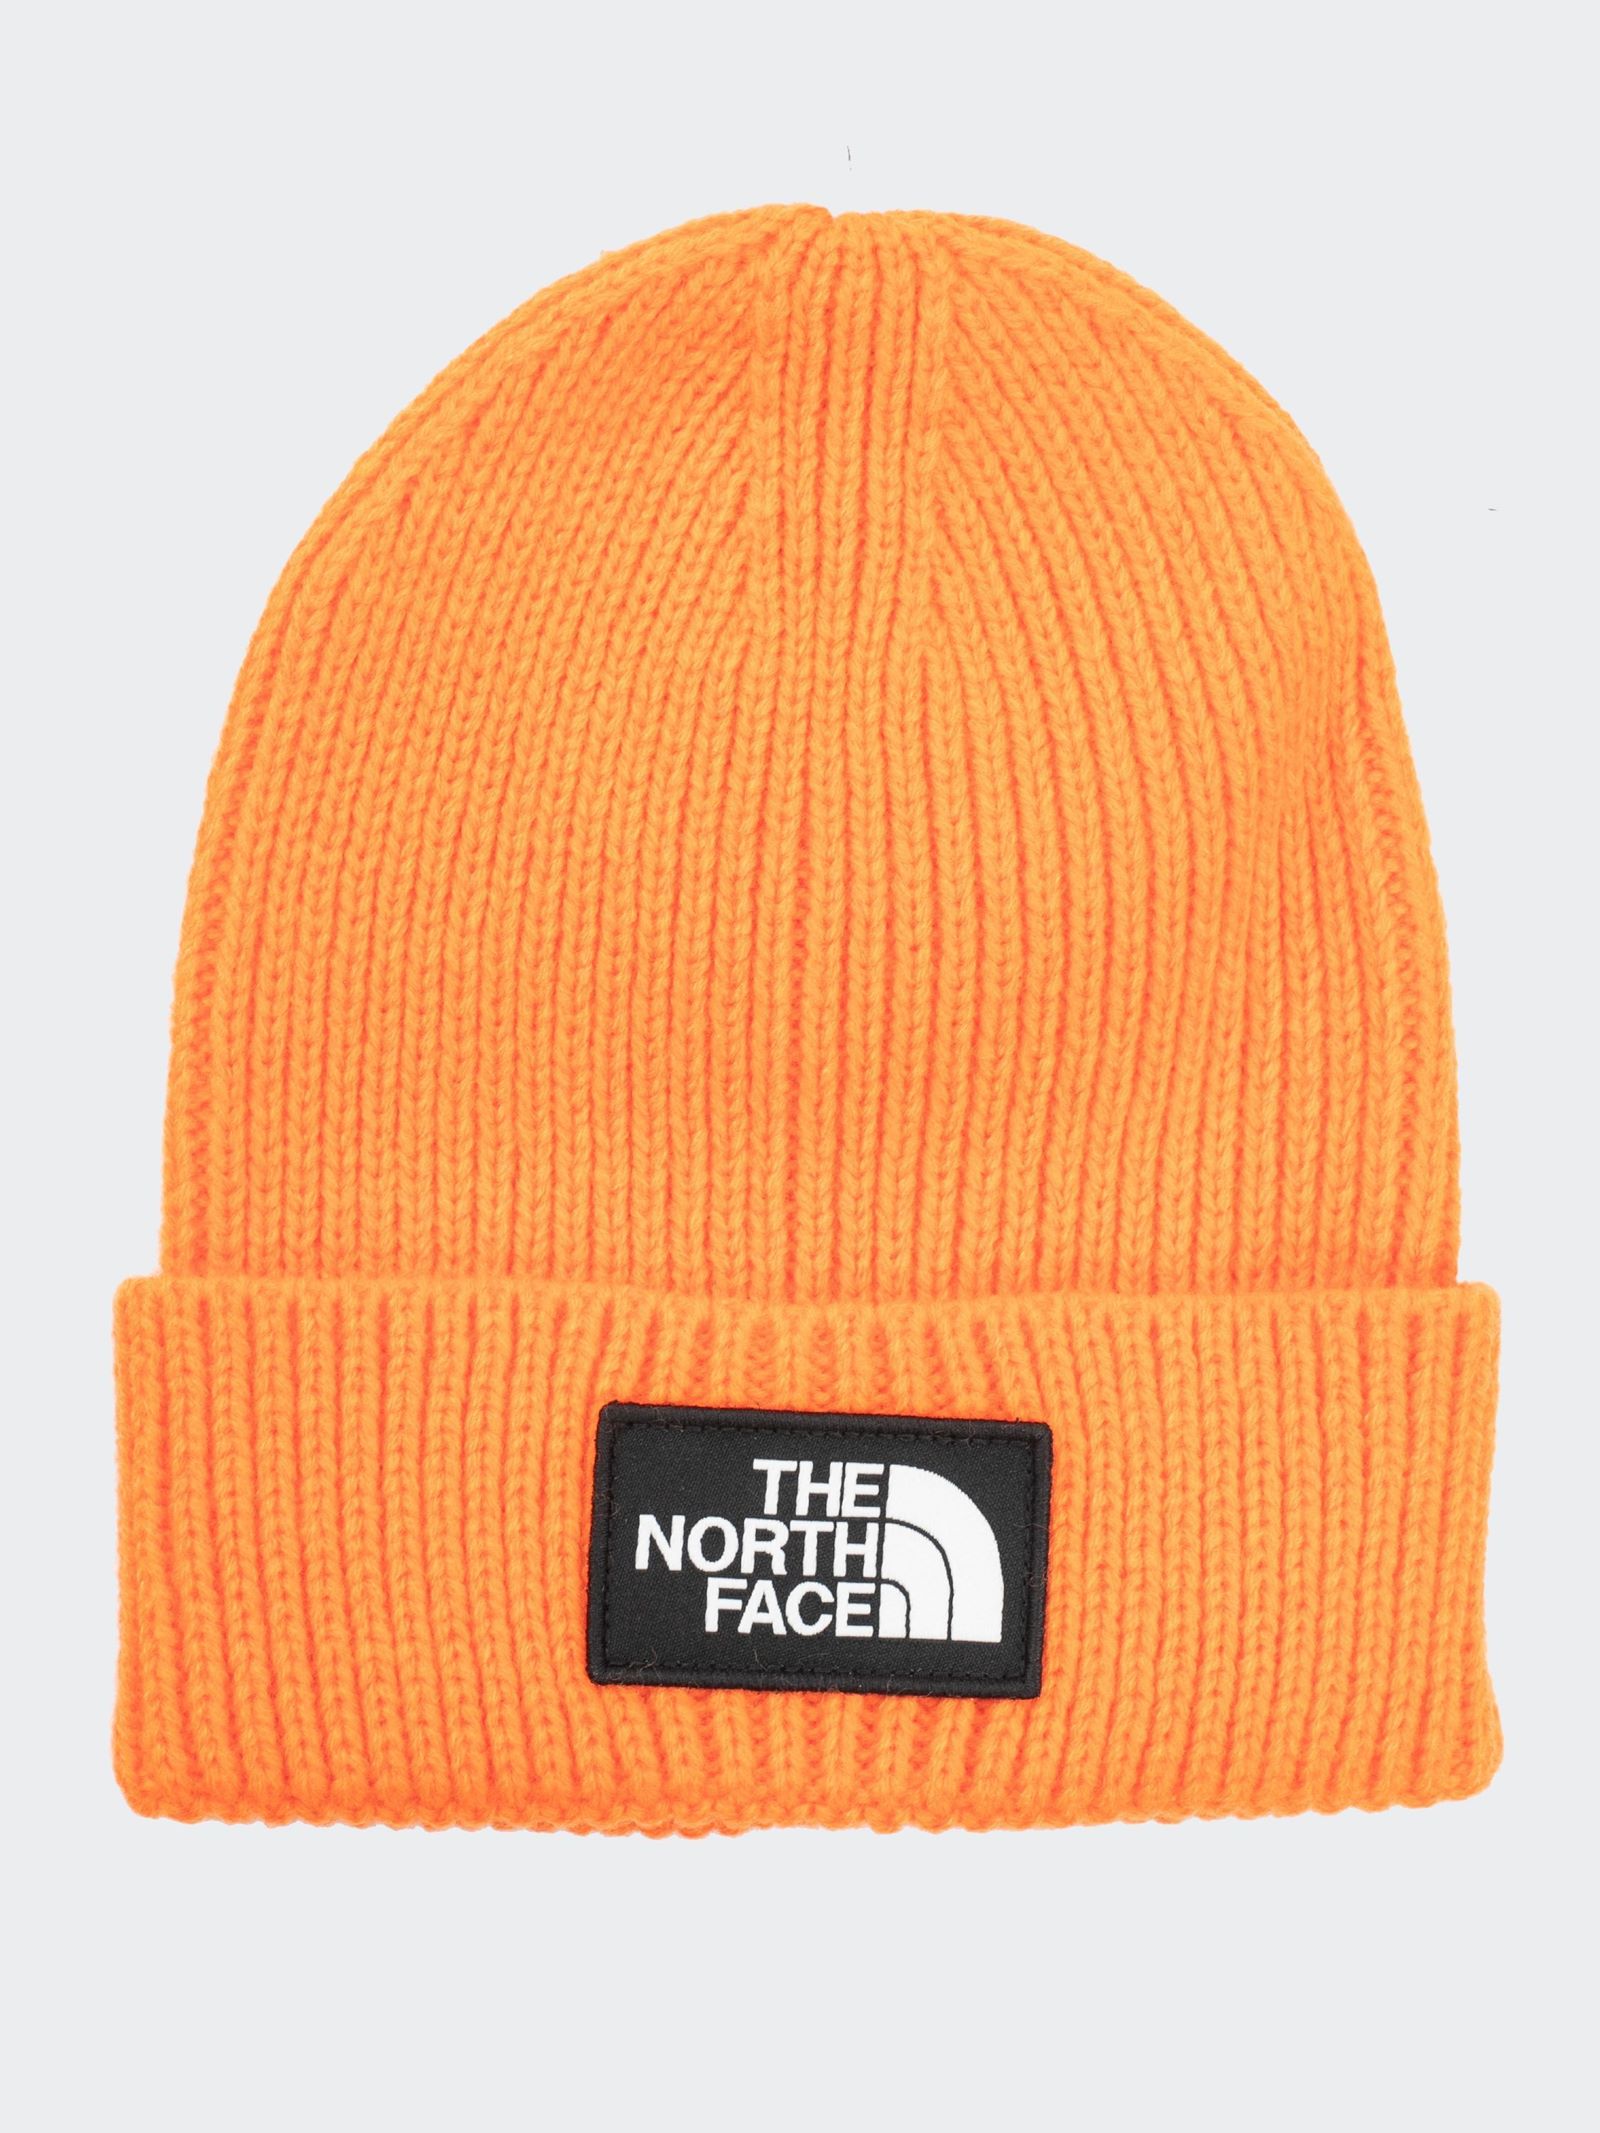 The North Face Logo Box Cuffed Beanie in Red Orange | Dapper Street